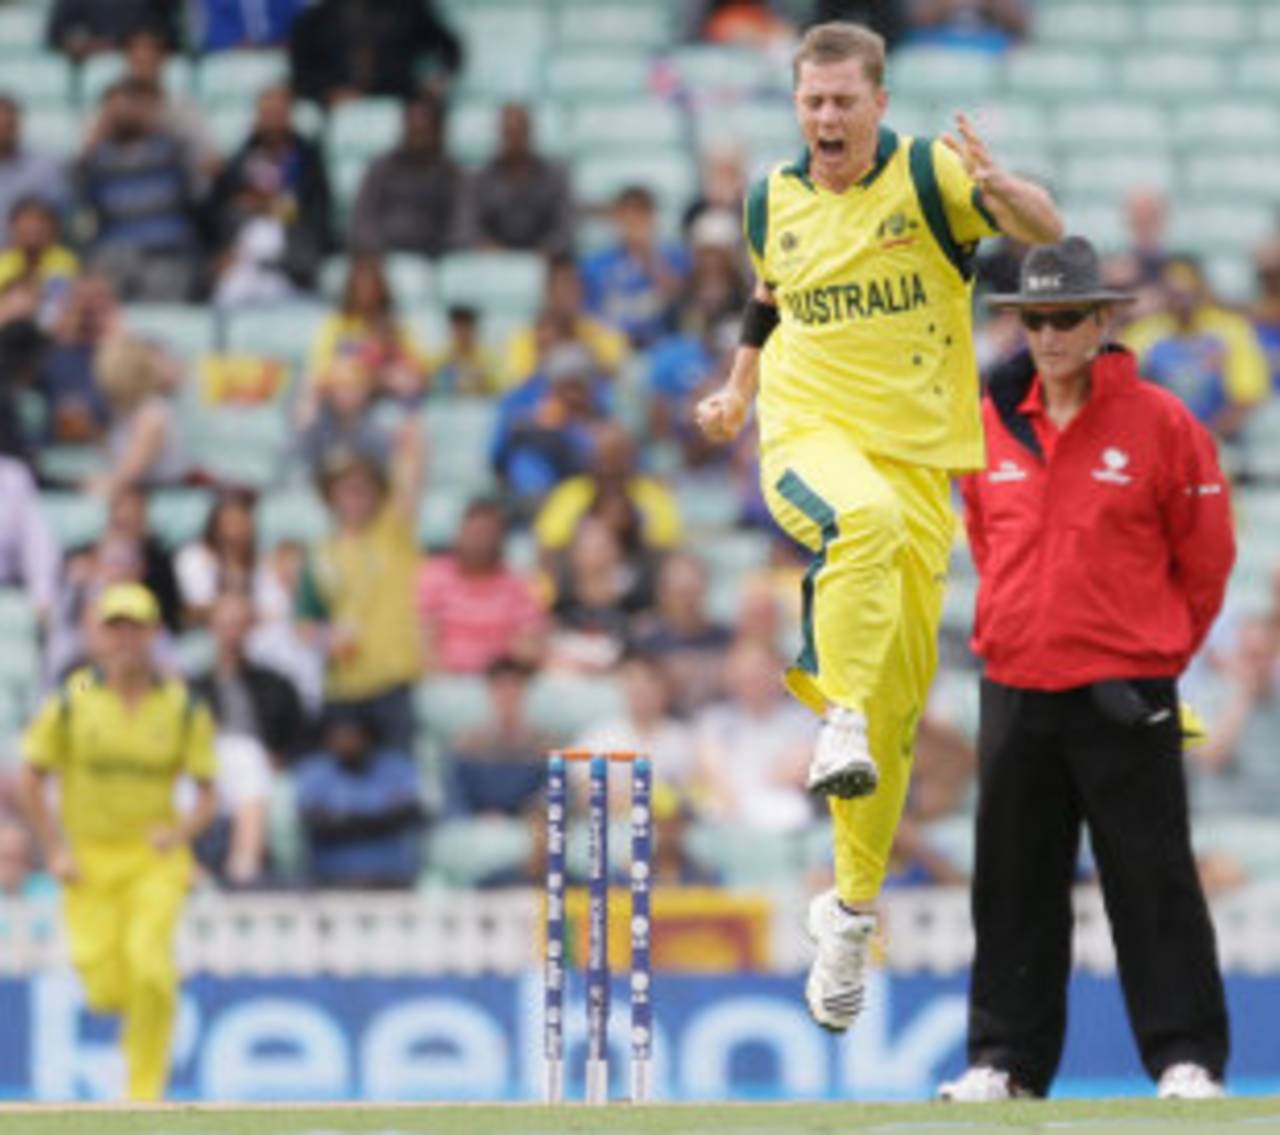 Xavier Doherty is back in Australia's ODI squad&nbsp;&nbsp;&bull;&nbsp;&nbsp;Associated Press